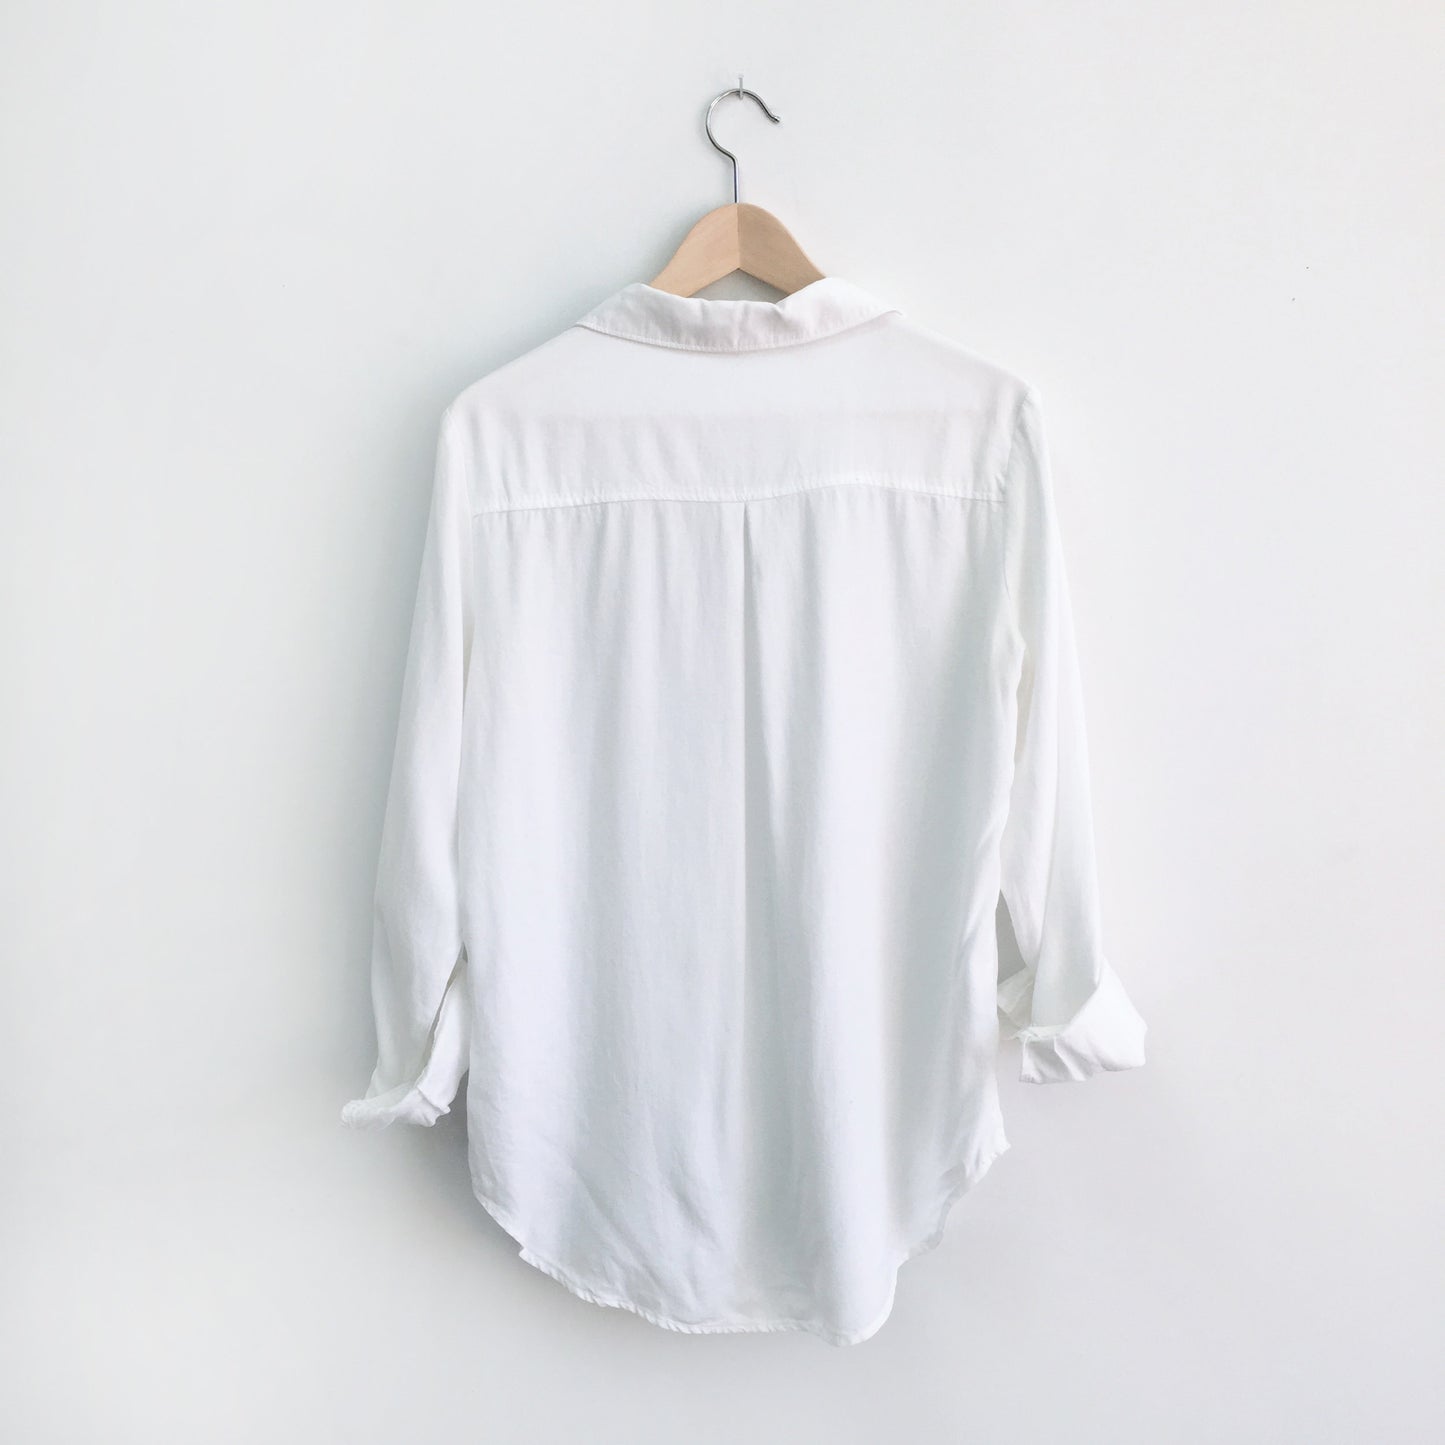 Cloth &amp; Stone Lace Up Shirt - size Medium